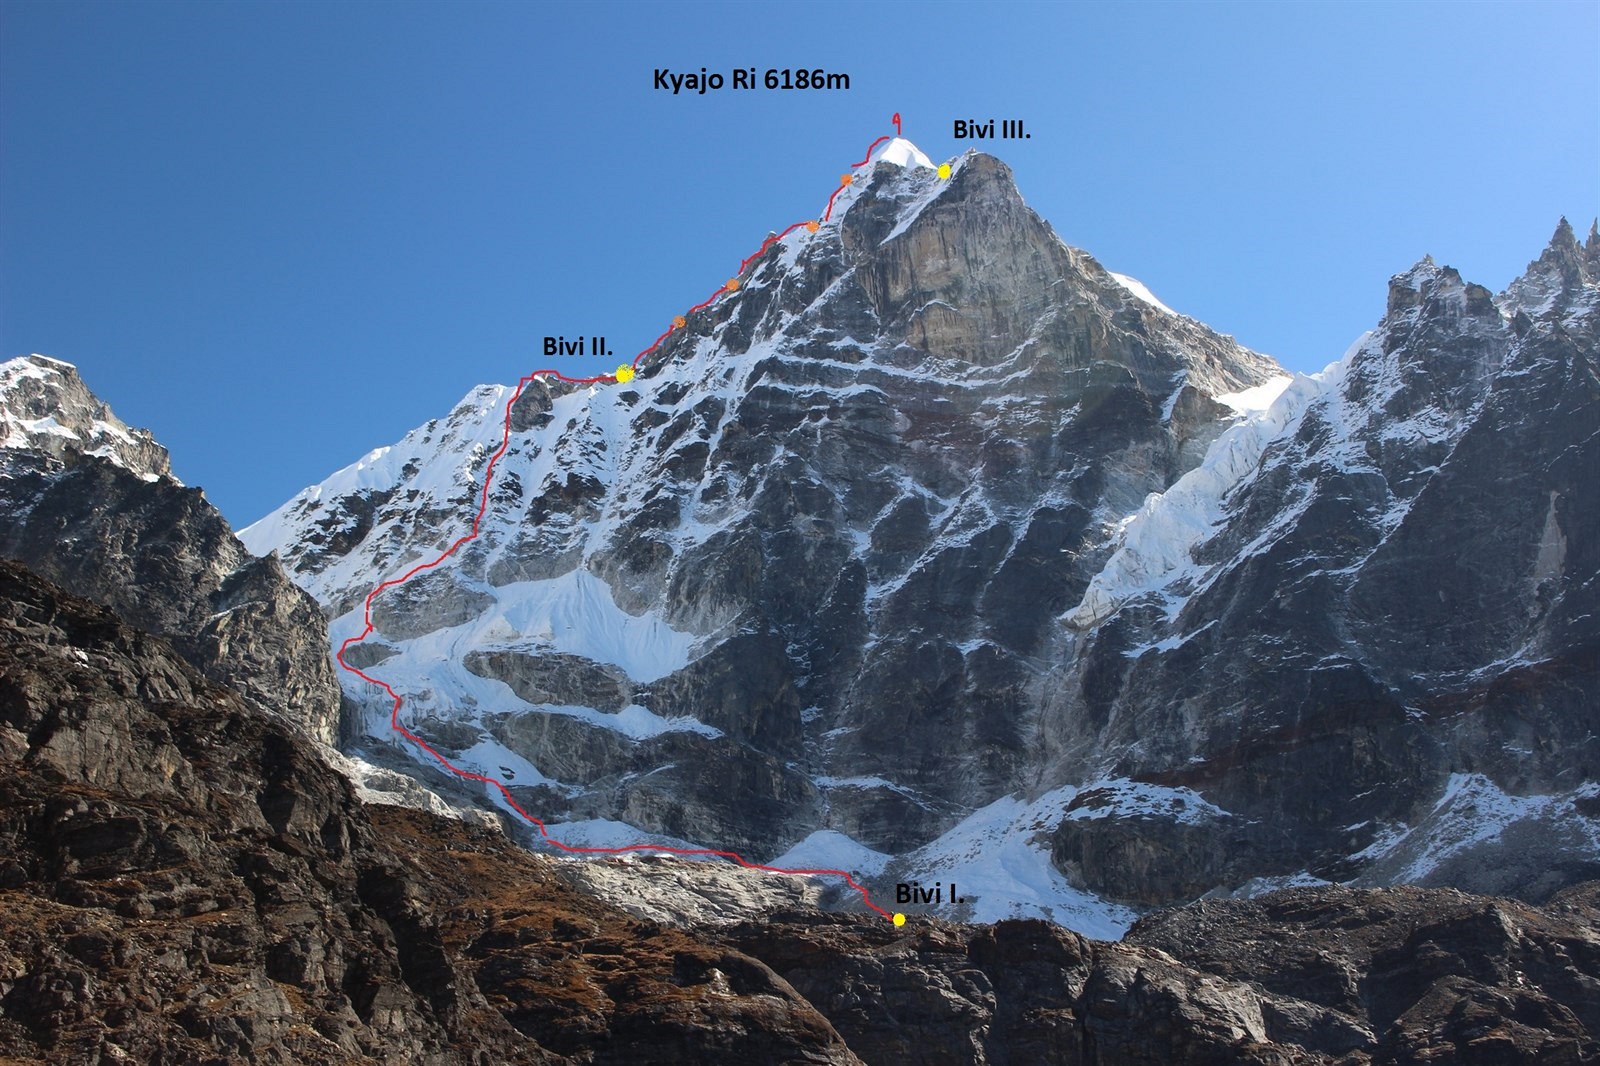 Новый чешский маршрут Výpadek rozumu (Утрата рассудка) по по Западной стене непальской горы Киязо Ри (Kyazo Ri) высотой 6186 метров. Фото  Márek Holeček